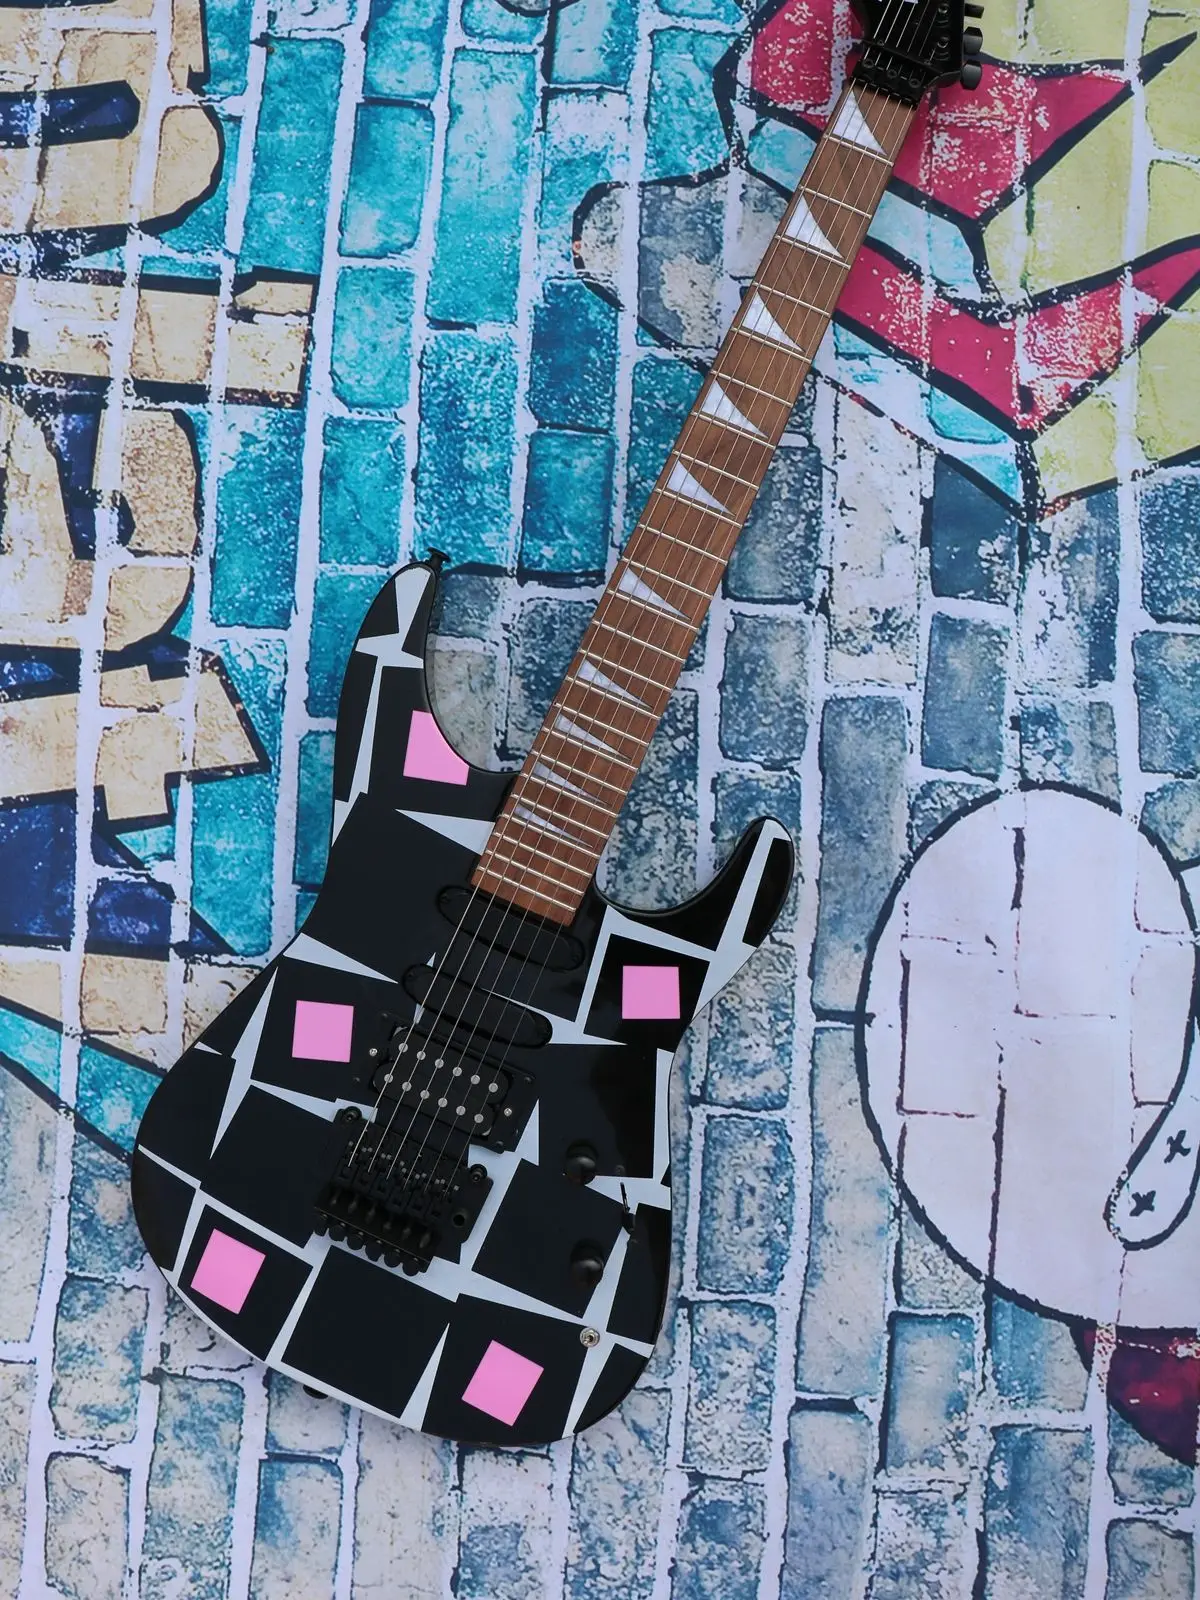 

Розовая квадратная гитара, фингерборд из розового дерева, высококачественный пикап, новая гитара, физическая съемка, очень низкая цена